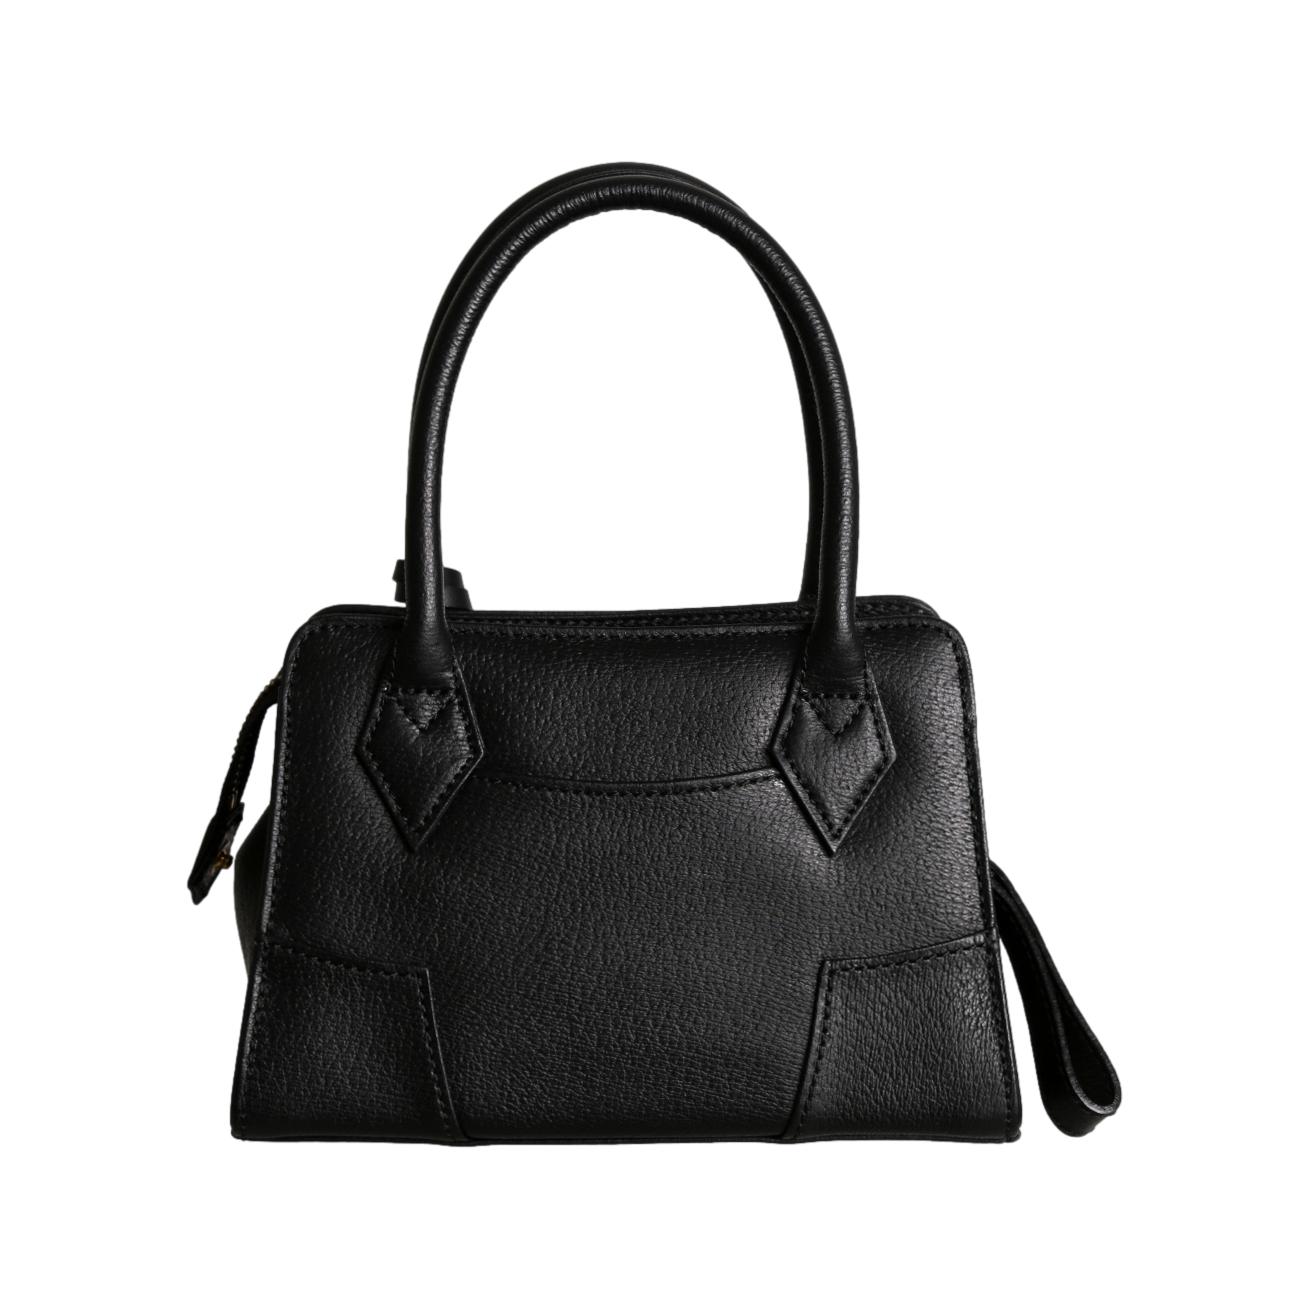 Vivienne Westwood Black Mini Top Handle Bag - Handbags